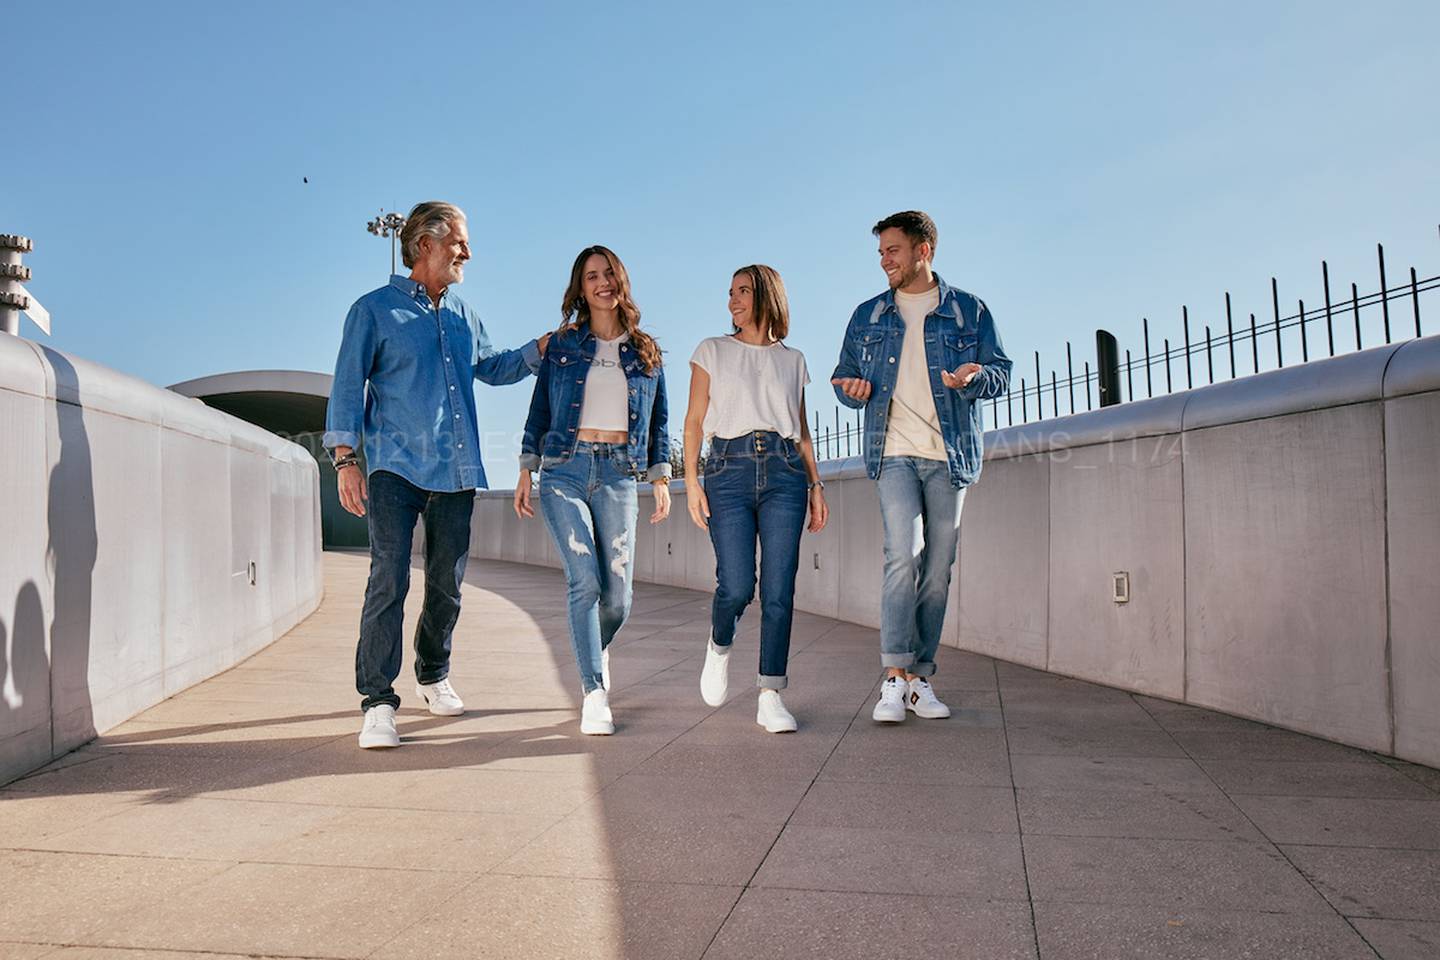 Los jeans son la prenda más popular en el mundo y actualmente hay una gran variedad de estilos con los cuales puedes crear distintos outfits que se adapten a tu estilo de vida.